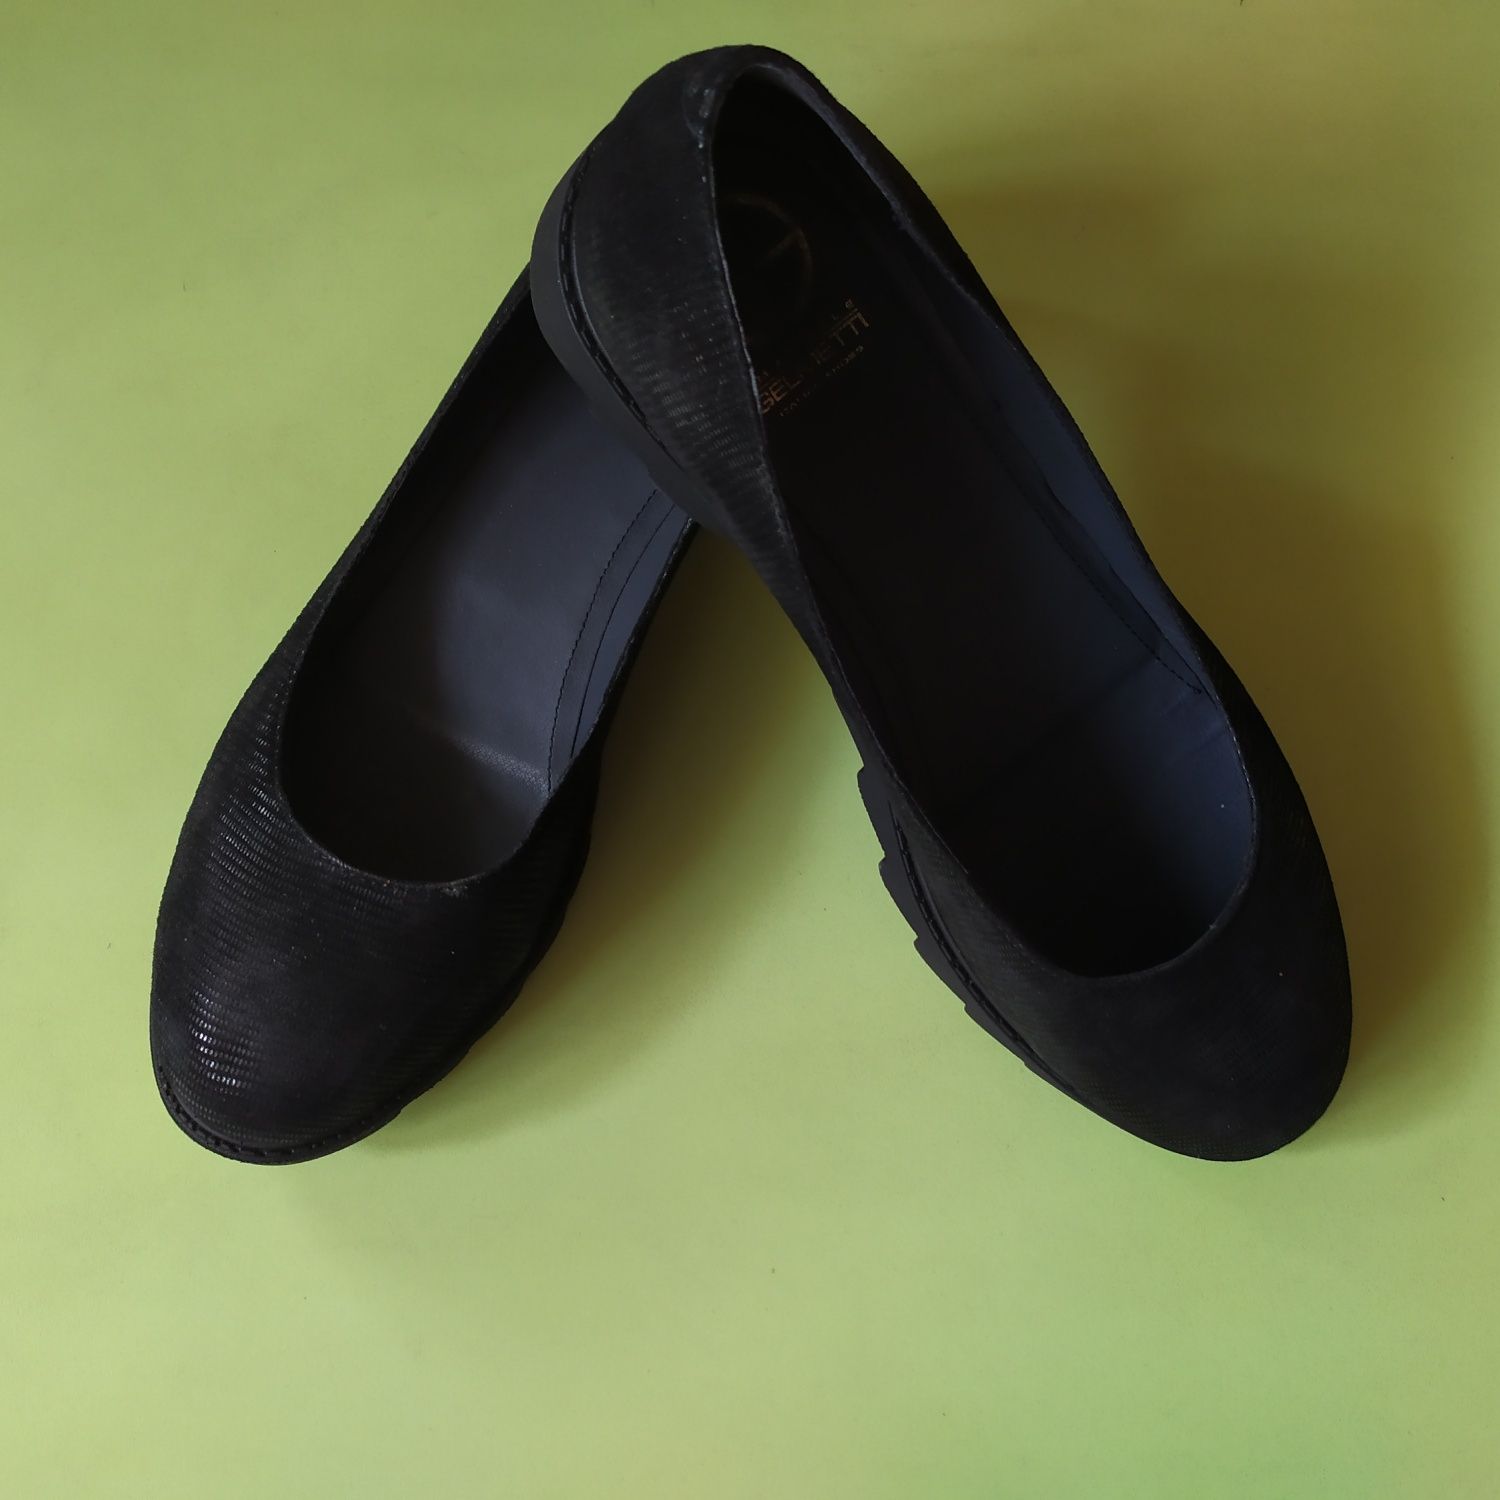 Балетки, туфли черные замшевые с тиснением на тракторной подошве 39-40